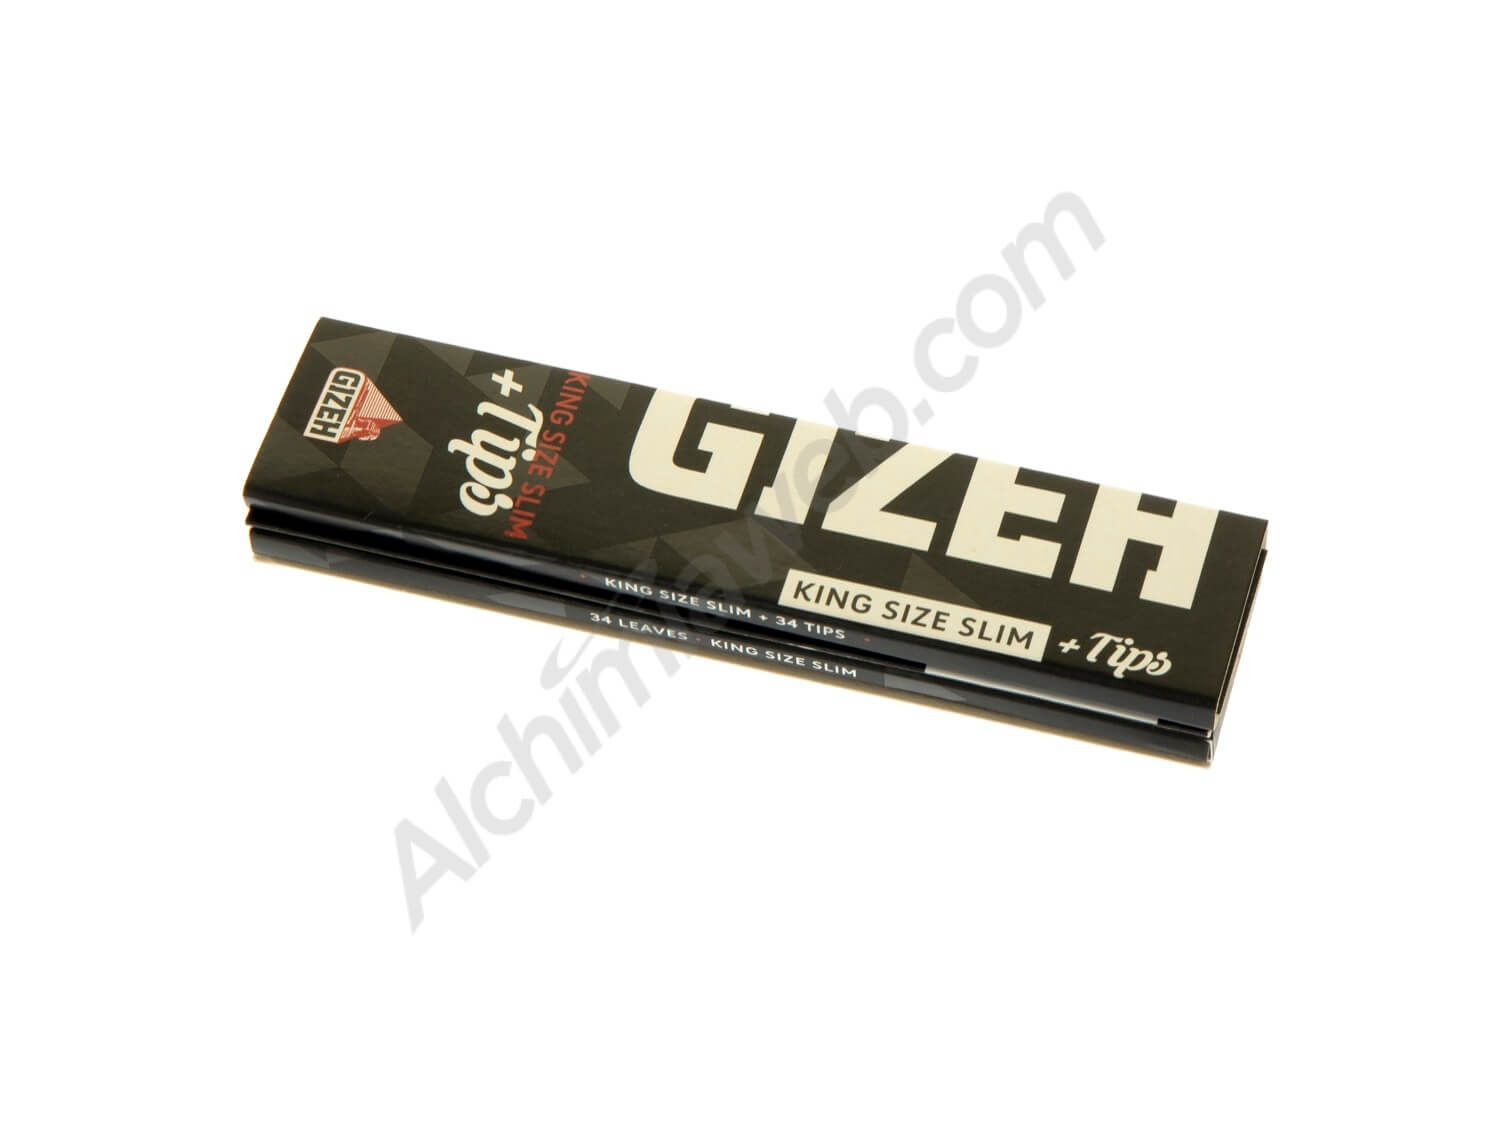 Vente en ligne du feuilles à rouler Gizeh Black King Size Slim + filtres